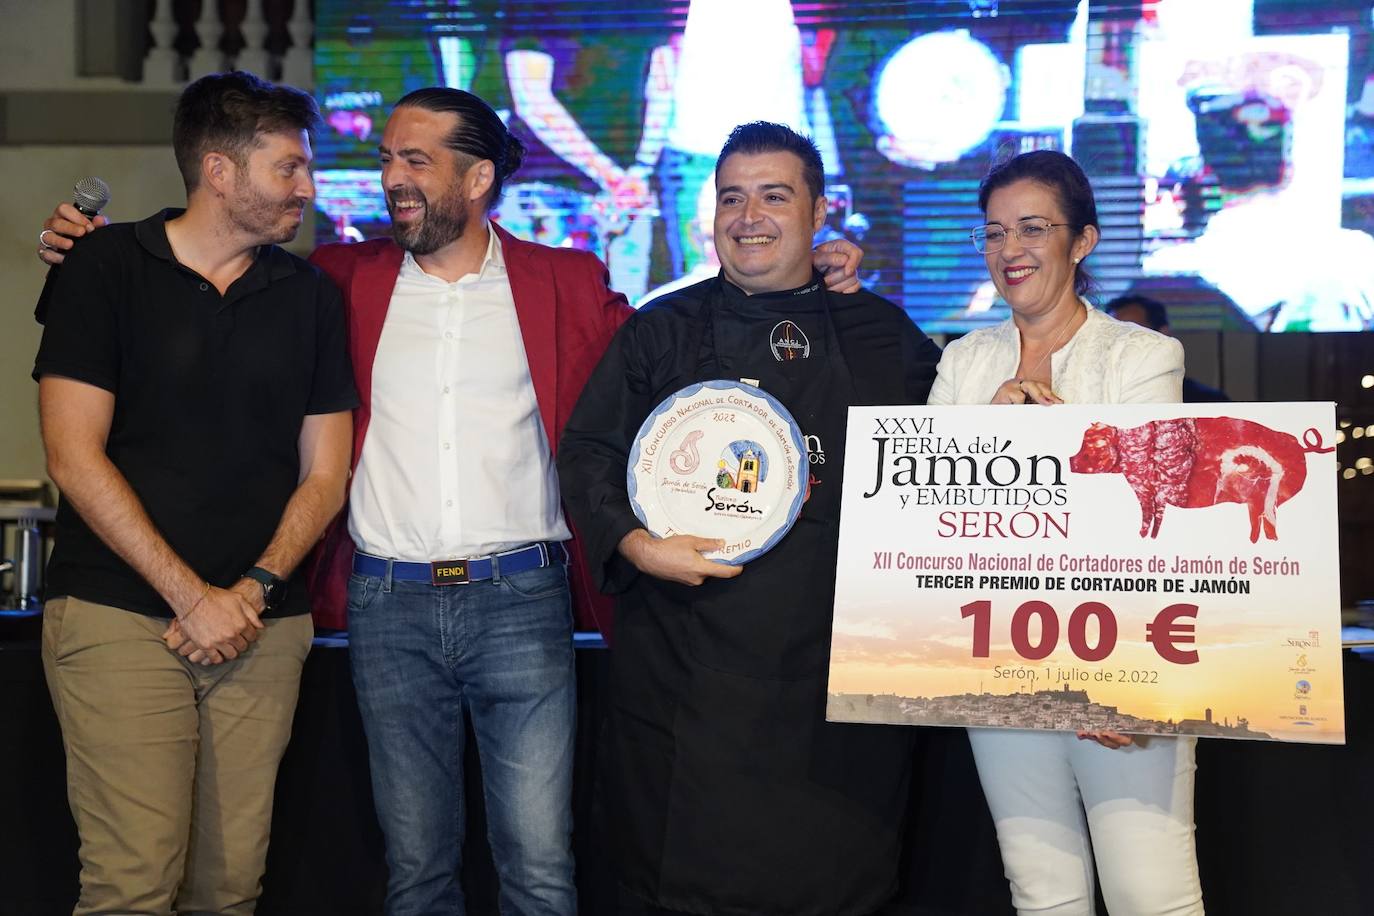 Fotos: Concurso Nacional de Cortadores de Jamón de Serón